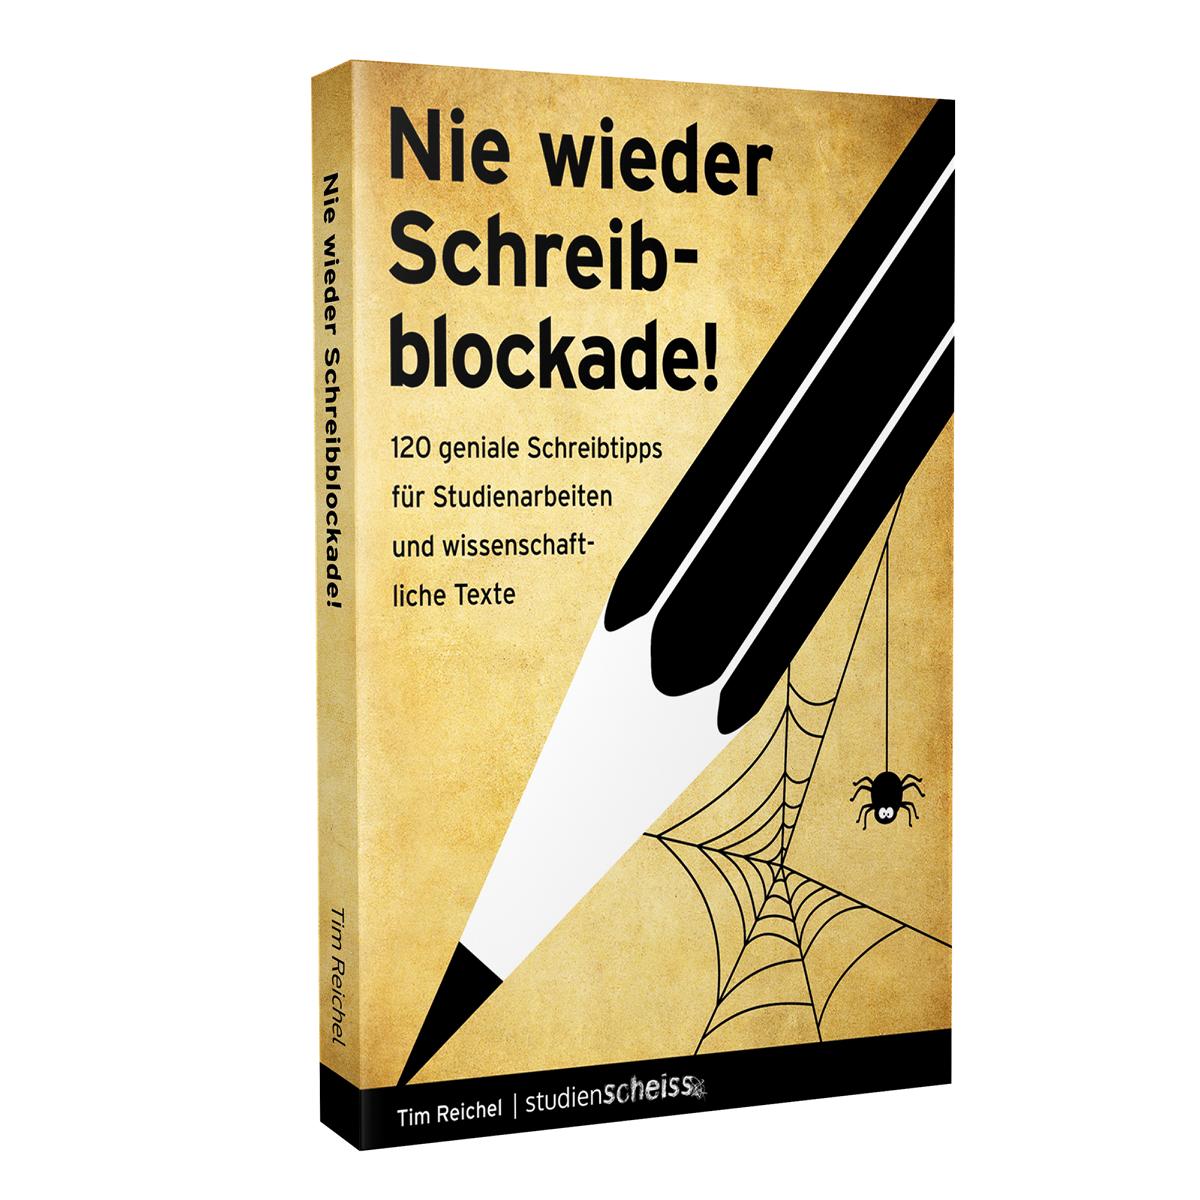 Nie wieder Schreibblockade (120 geniale Schreibtipps für Studienarbeiten und wissenschaftliche Texte) von Tim Reichel erschienen im Studienscheiss Verlag